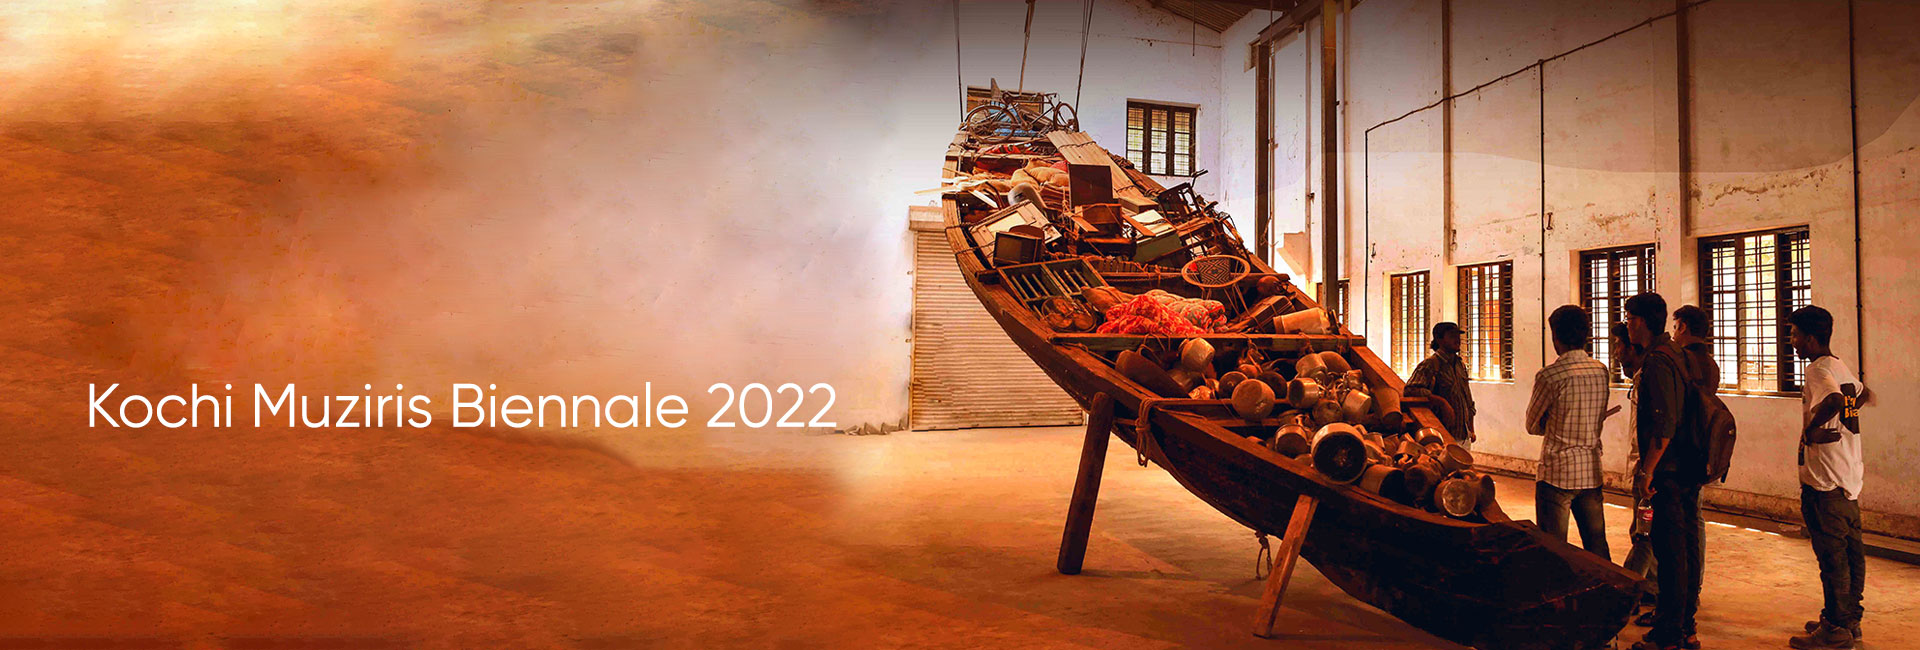 Kochi Muziris Biennale 2022